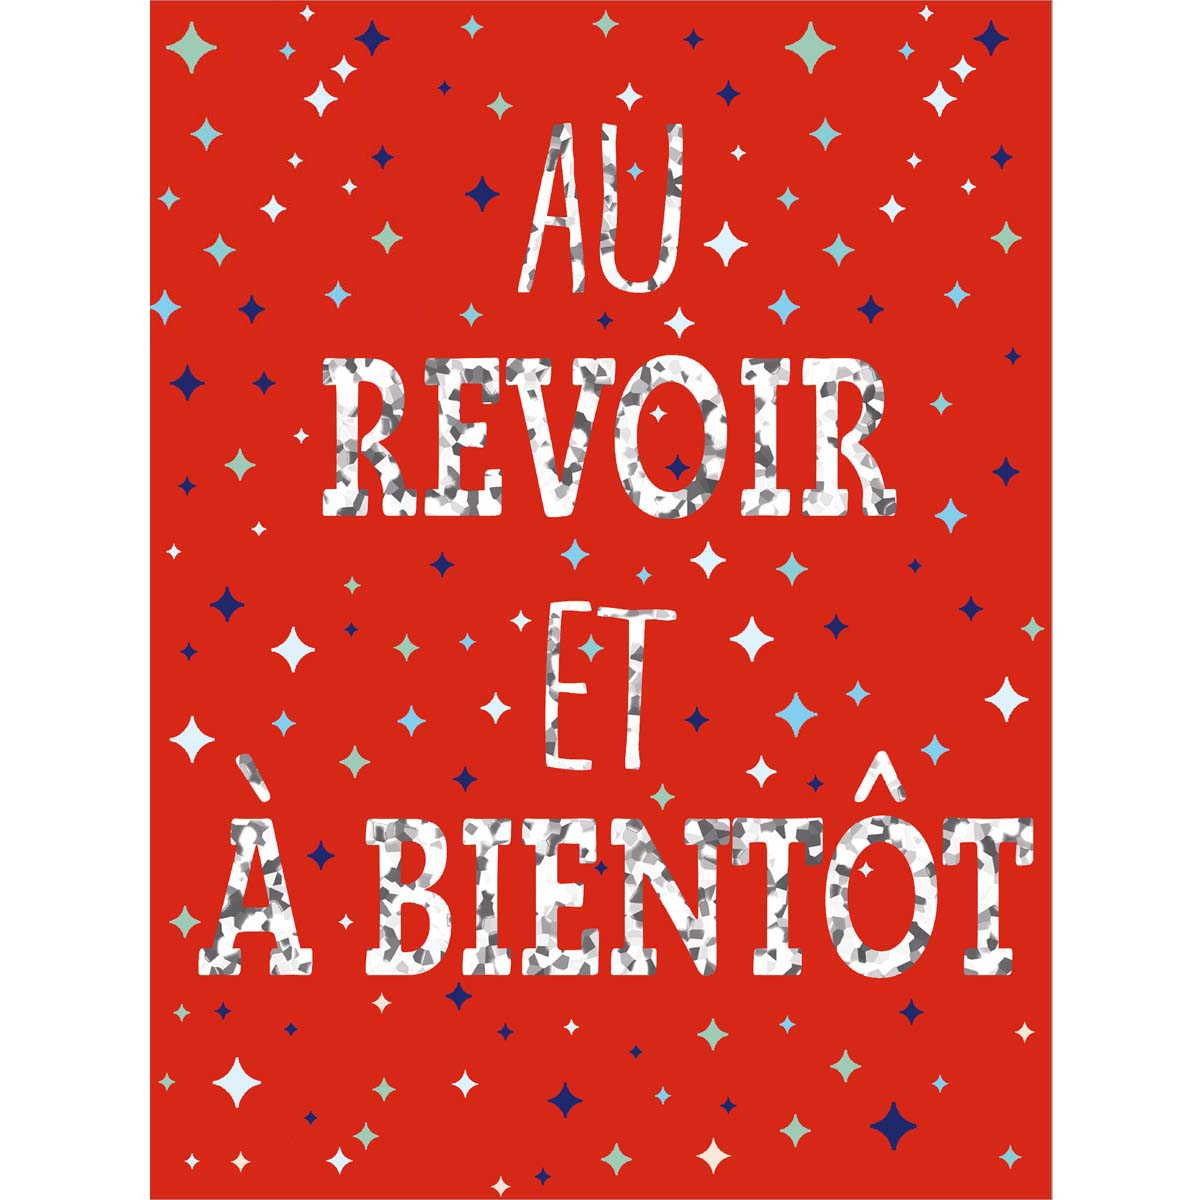 Draeger Carte De Vœux Carte De Noël à offrir pour les fêtes de fin dannée 11,5 x 17 cm Argent Carte Bonne Fête en papier rigide de haute qualité 36g